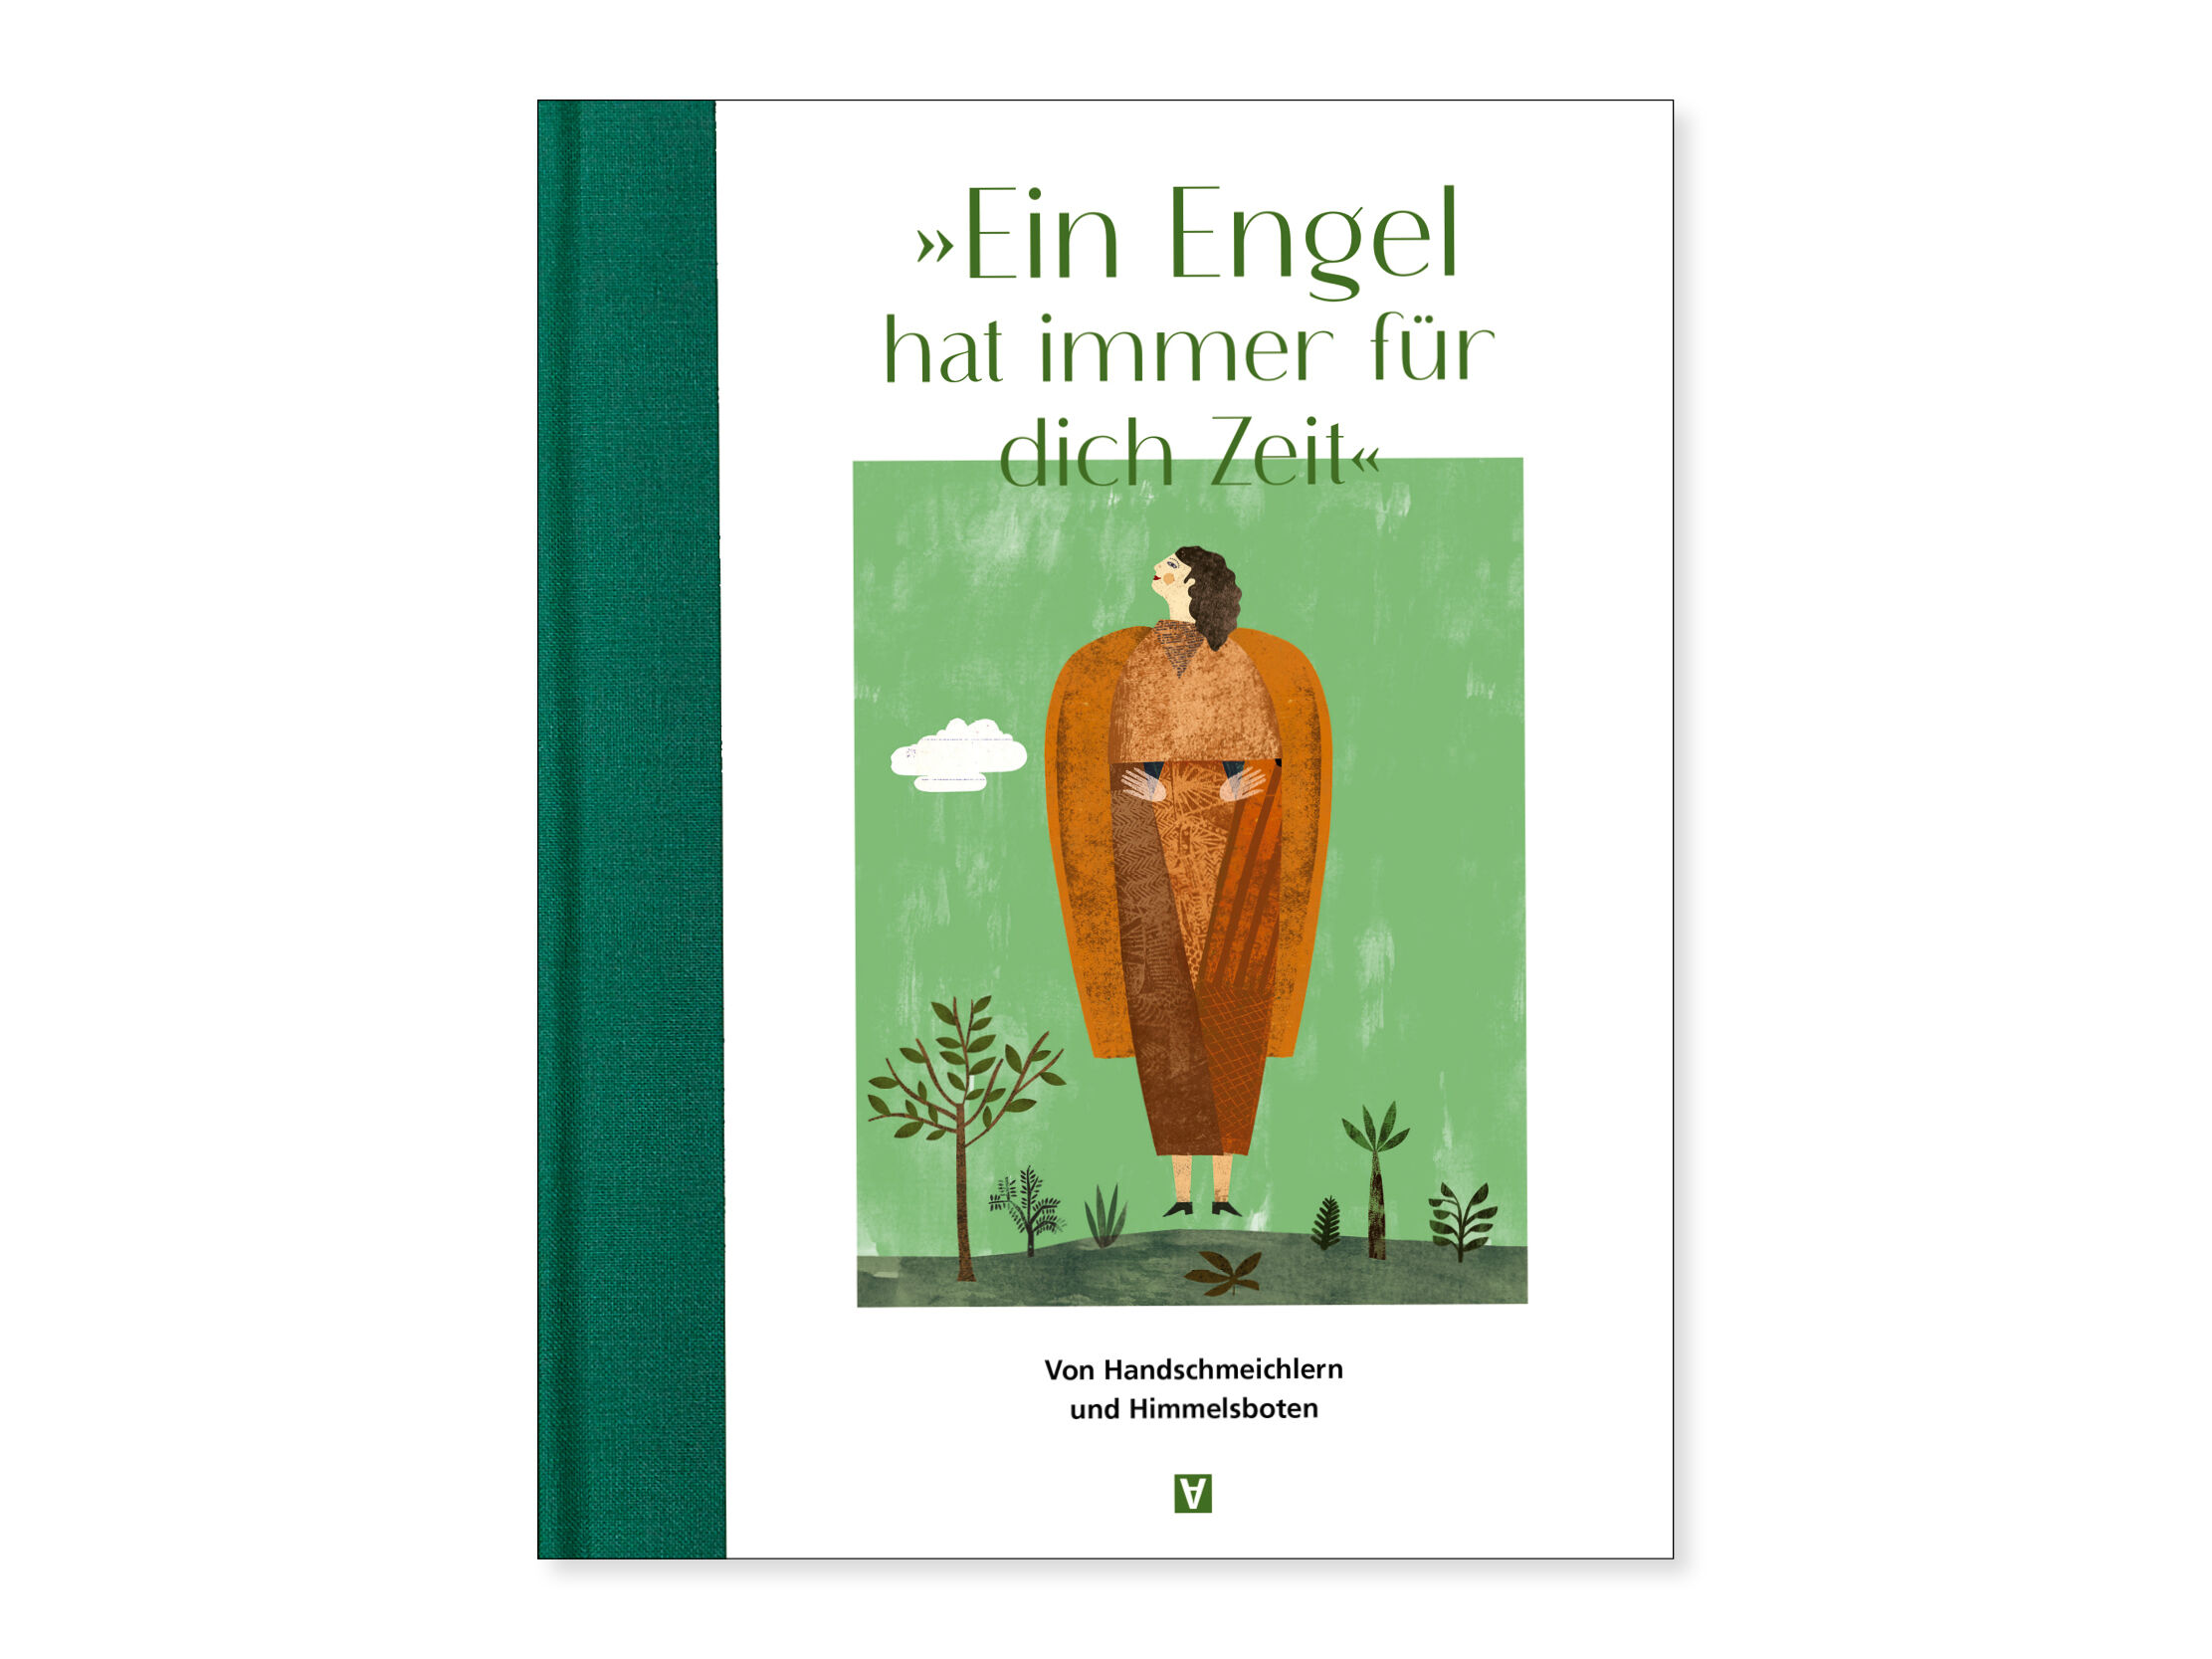 Das Cover des Buches "Ein Engel hat immer für dich Zeit" zeigt eine Illustration des Andere Zeiten-Bronzeengels vor einer grünen Landschaft. Der Rücken des Buches ist dunkelgrün.